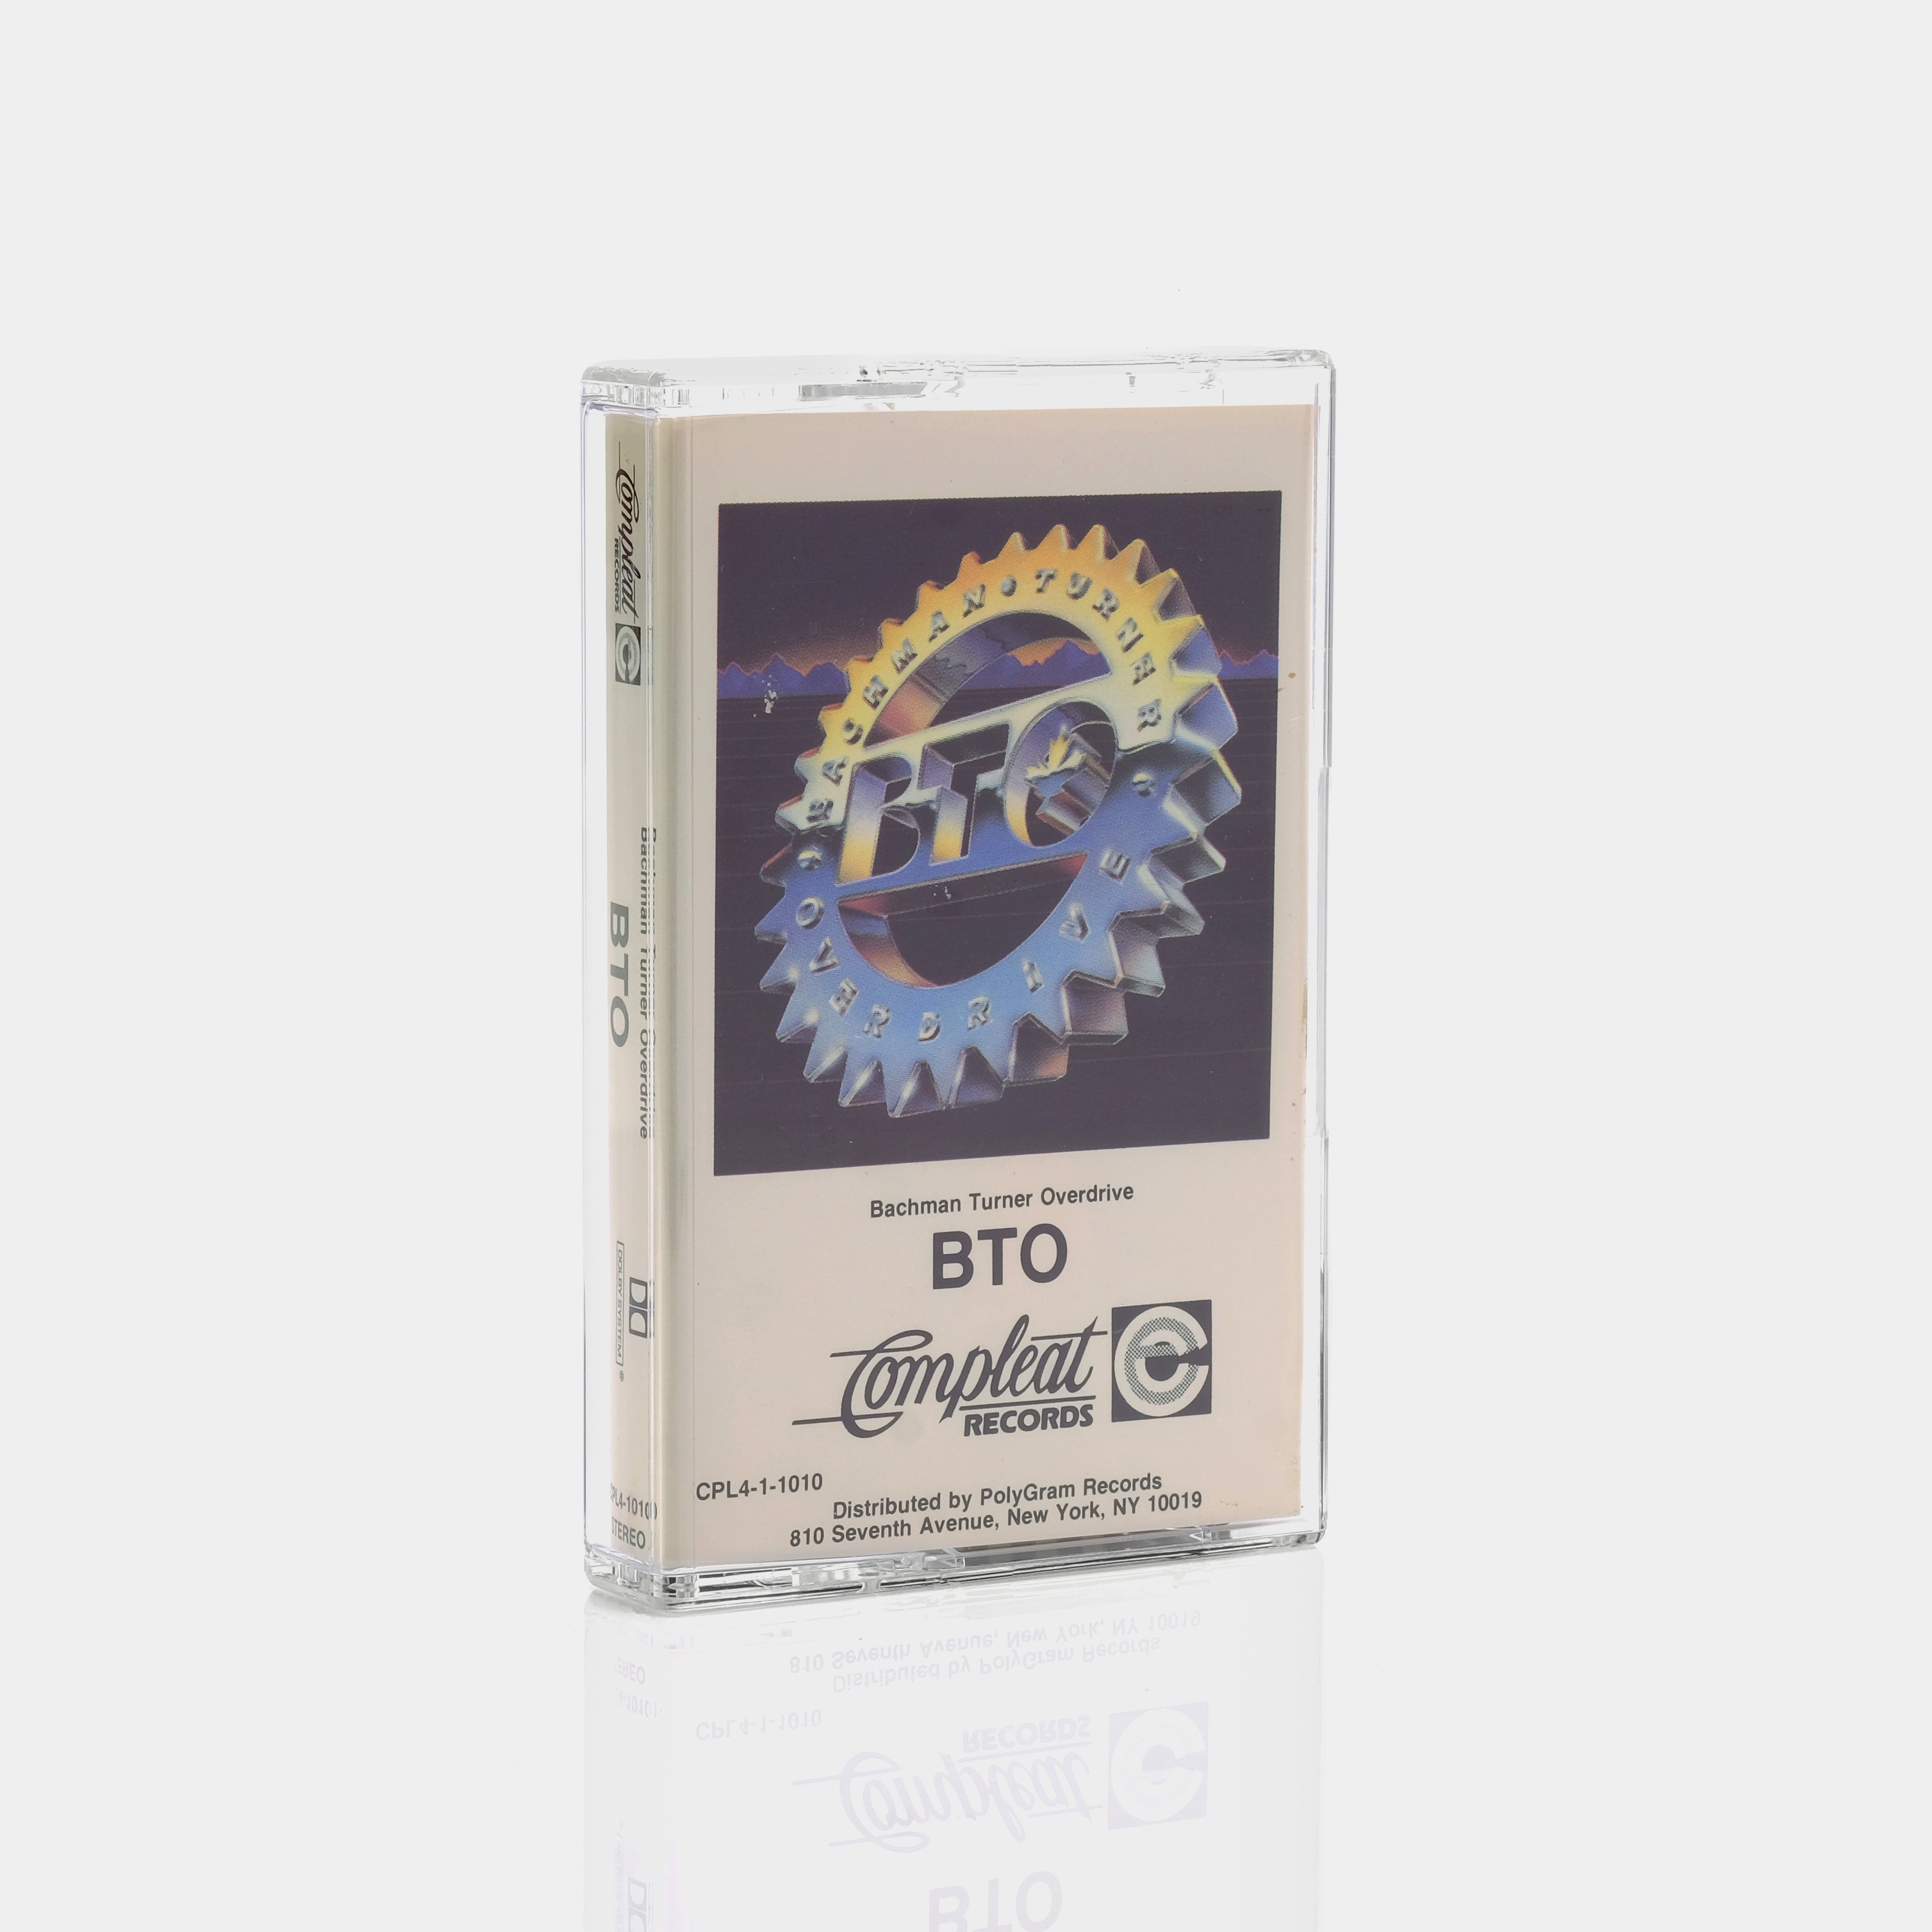 BTO - Bachman Turner Overdrive Cassette Tape